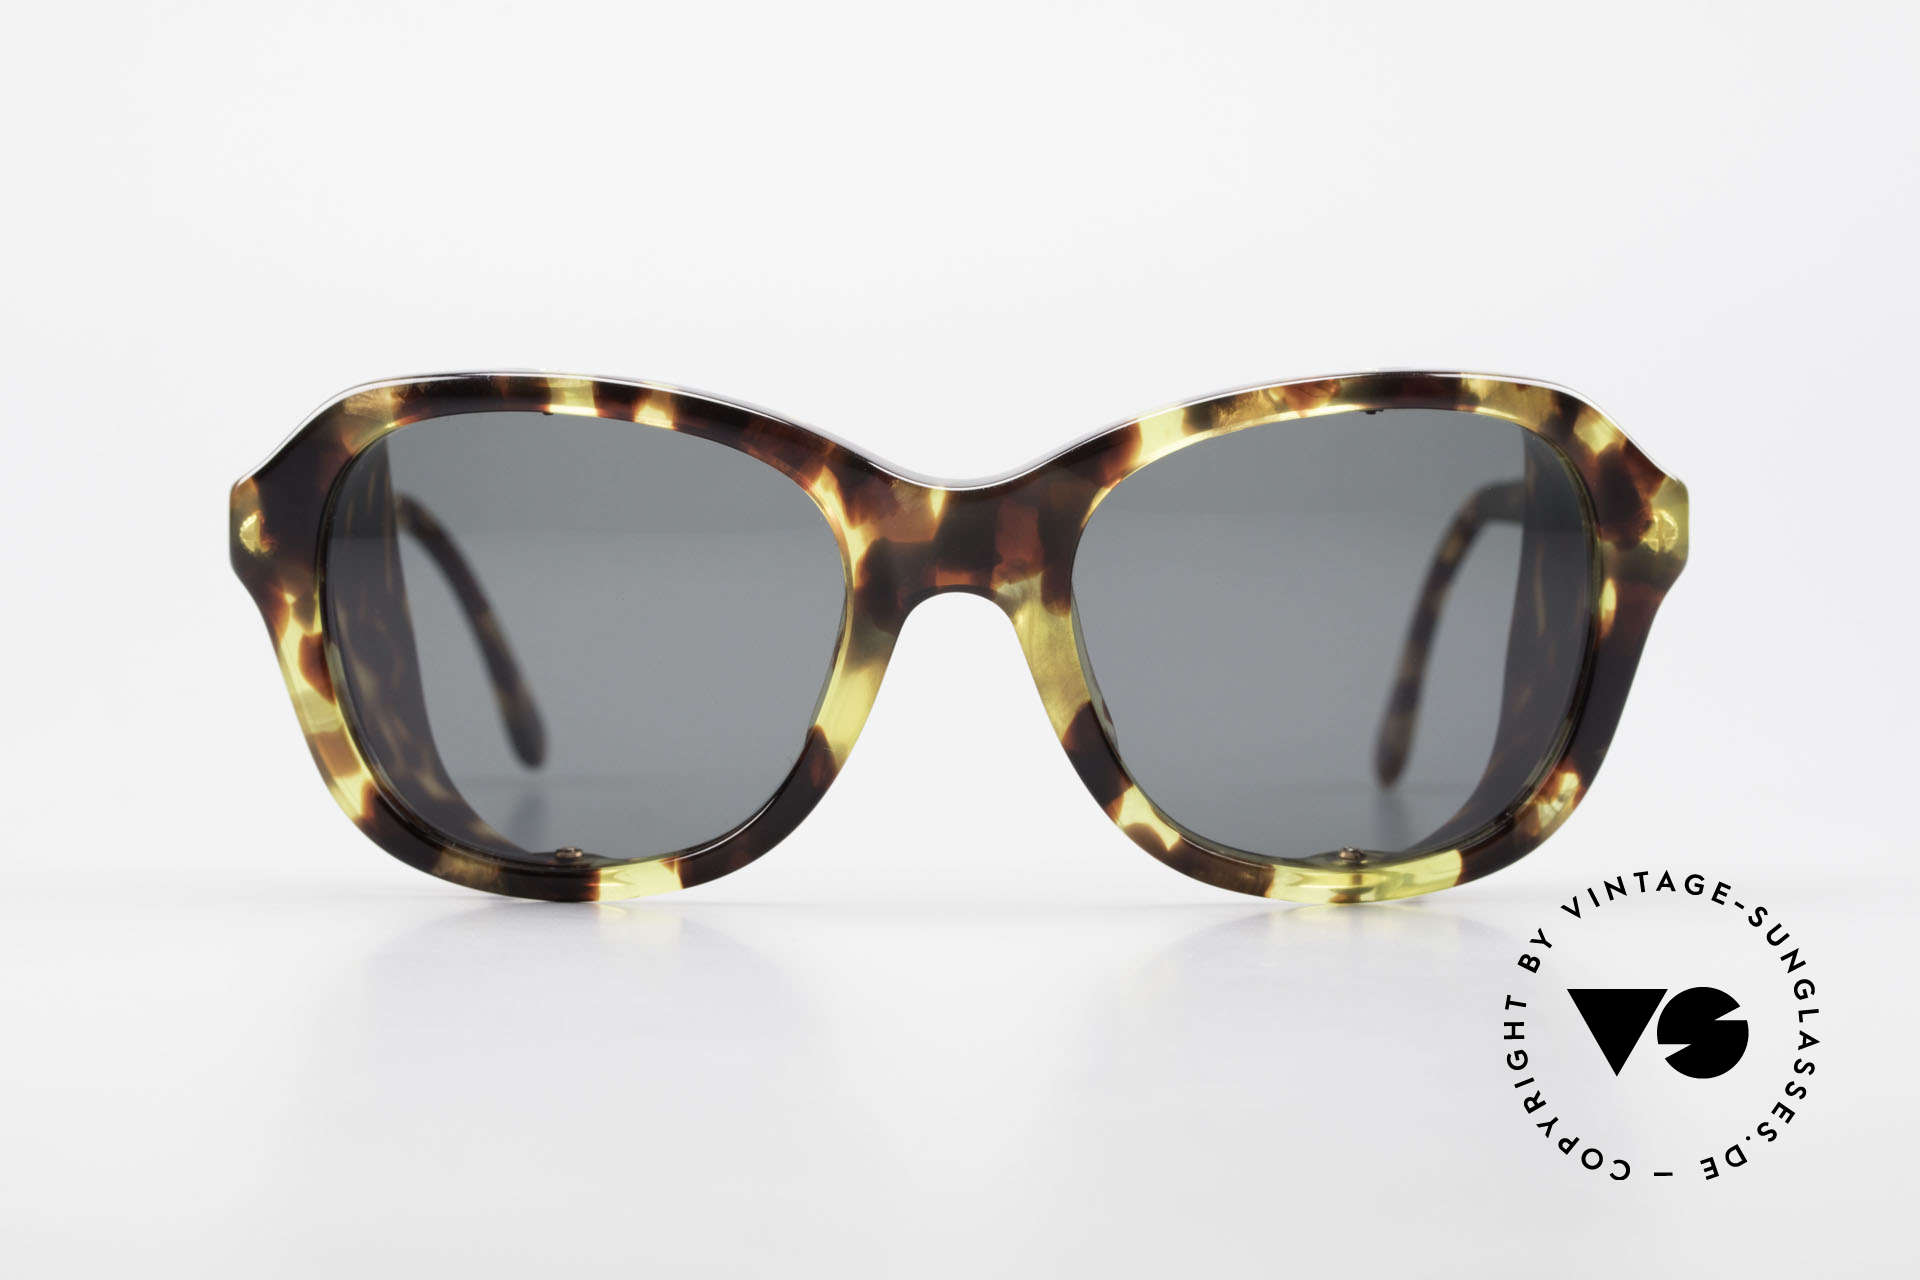 Giorgio Armani 826 No Retro Sunglasses True 90s, extraordinary designer sunglasses by GIORGIO Armani, Made for Women